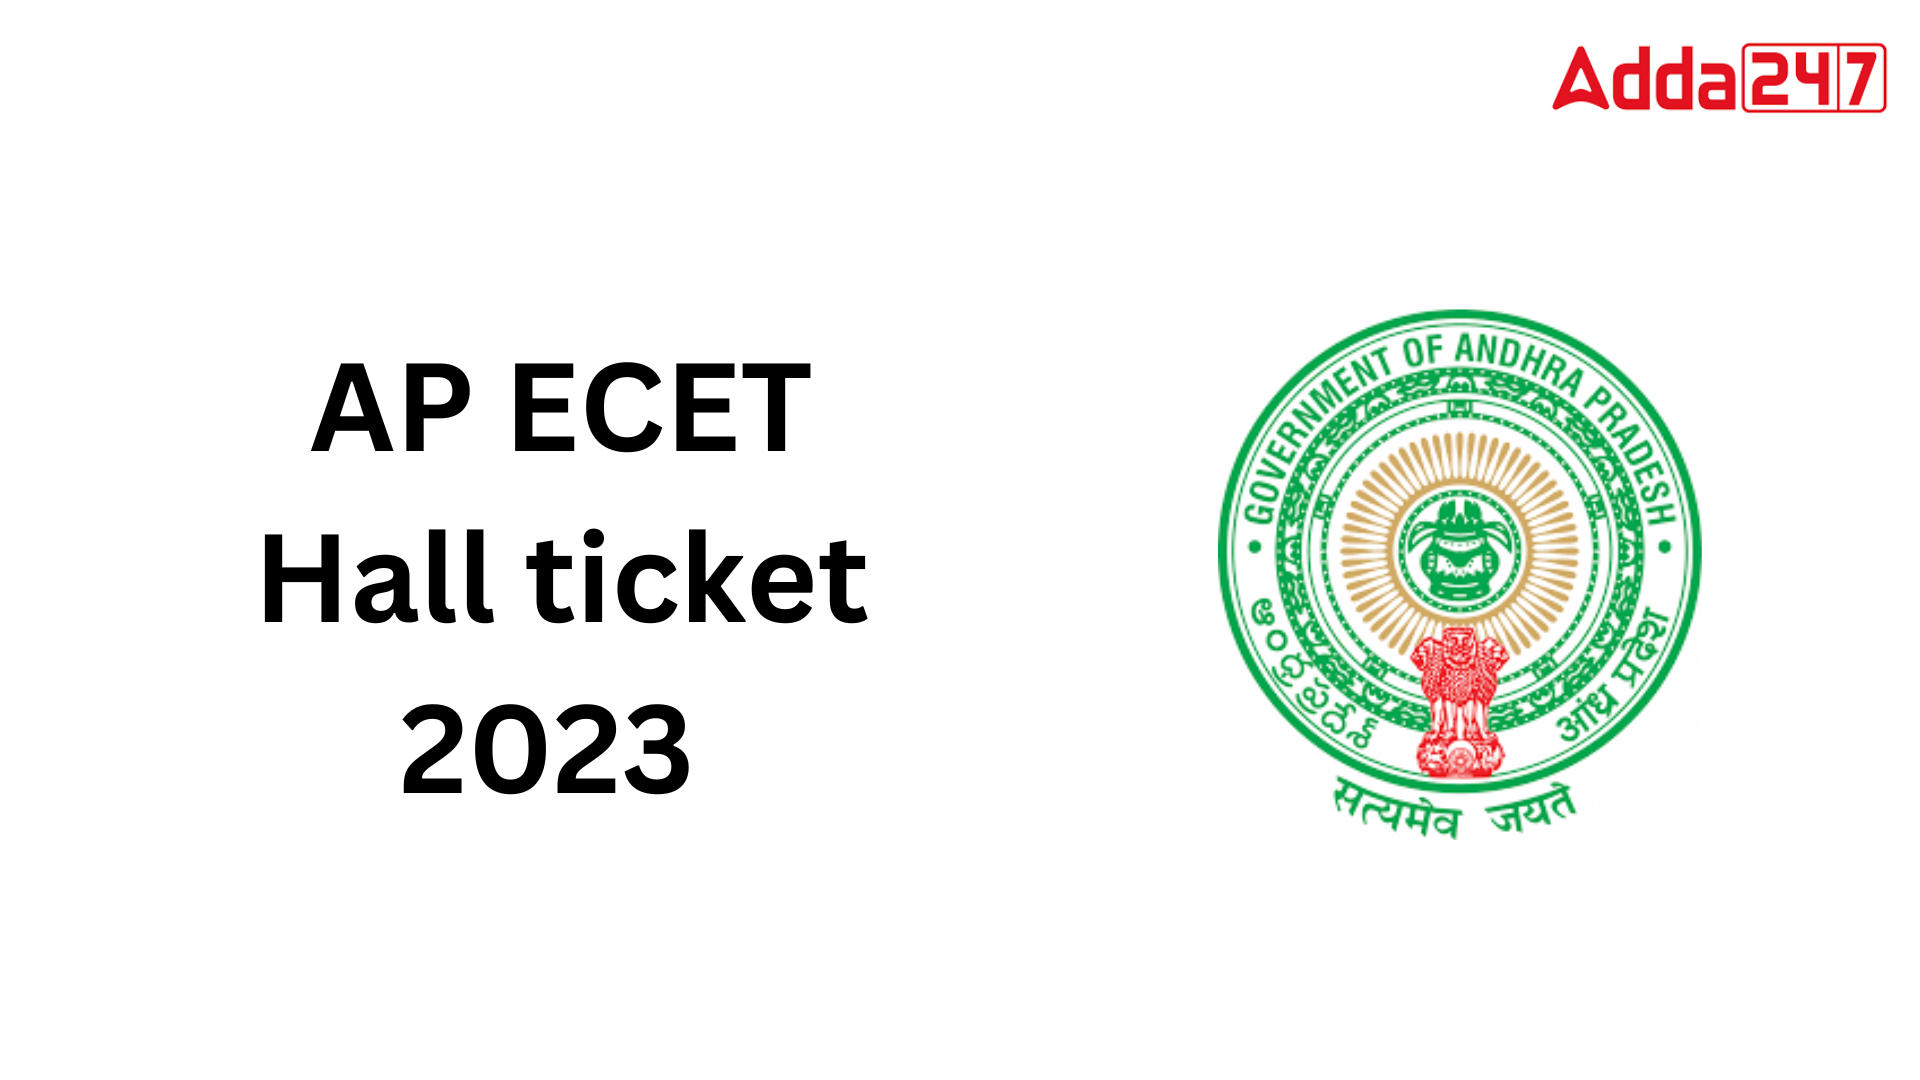 AP ECET Hall ticket 2023